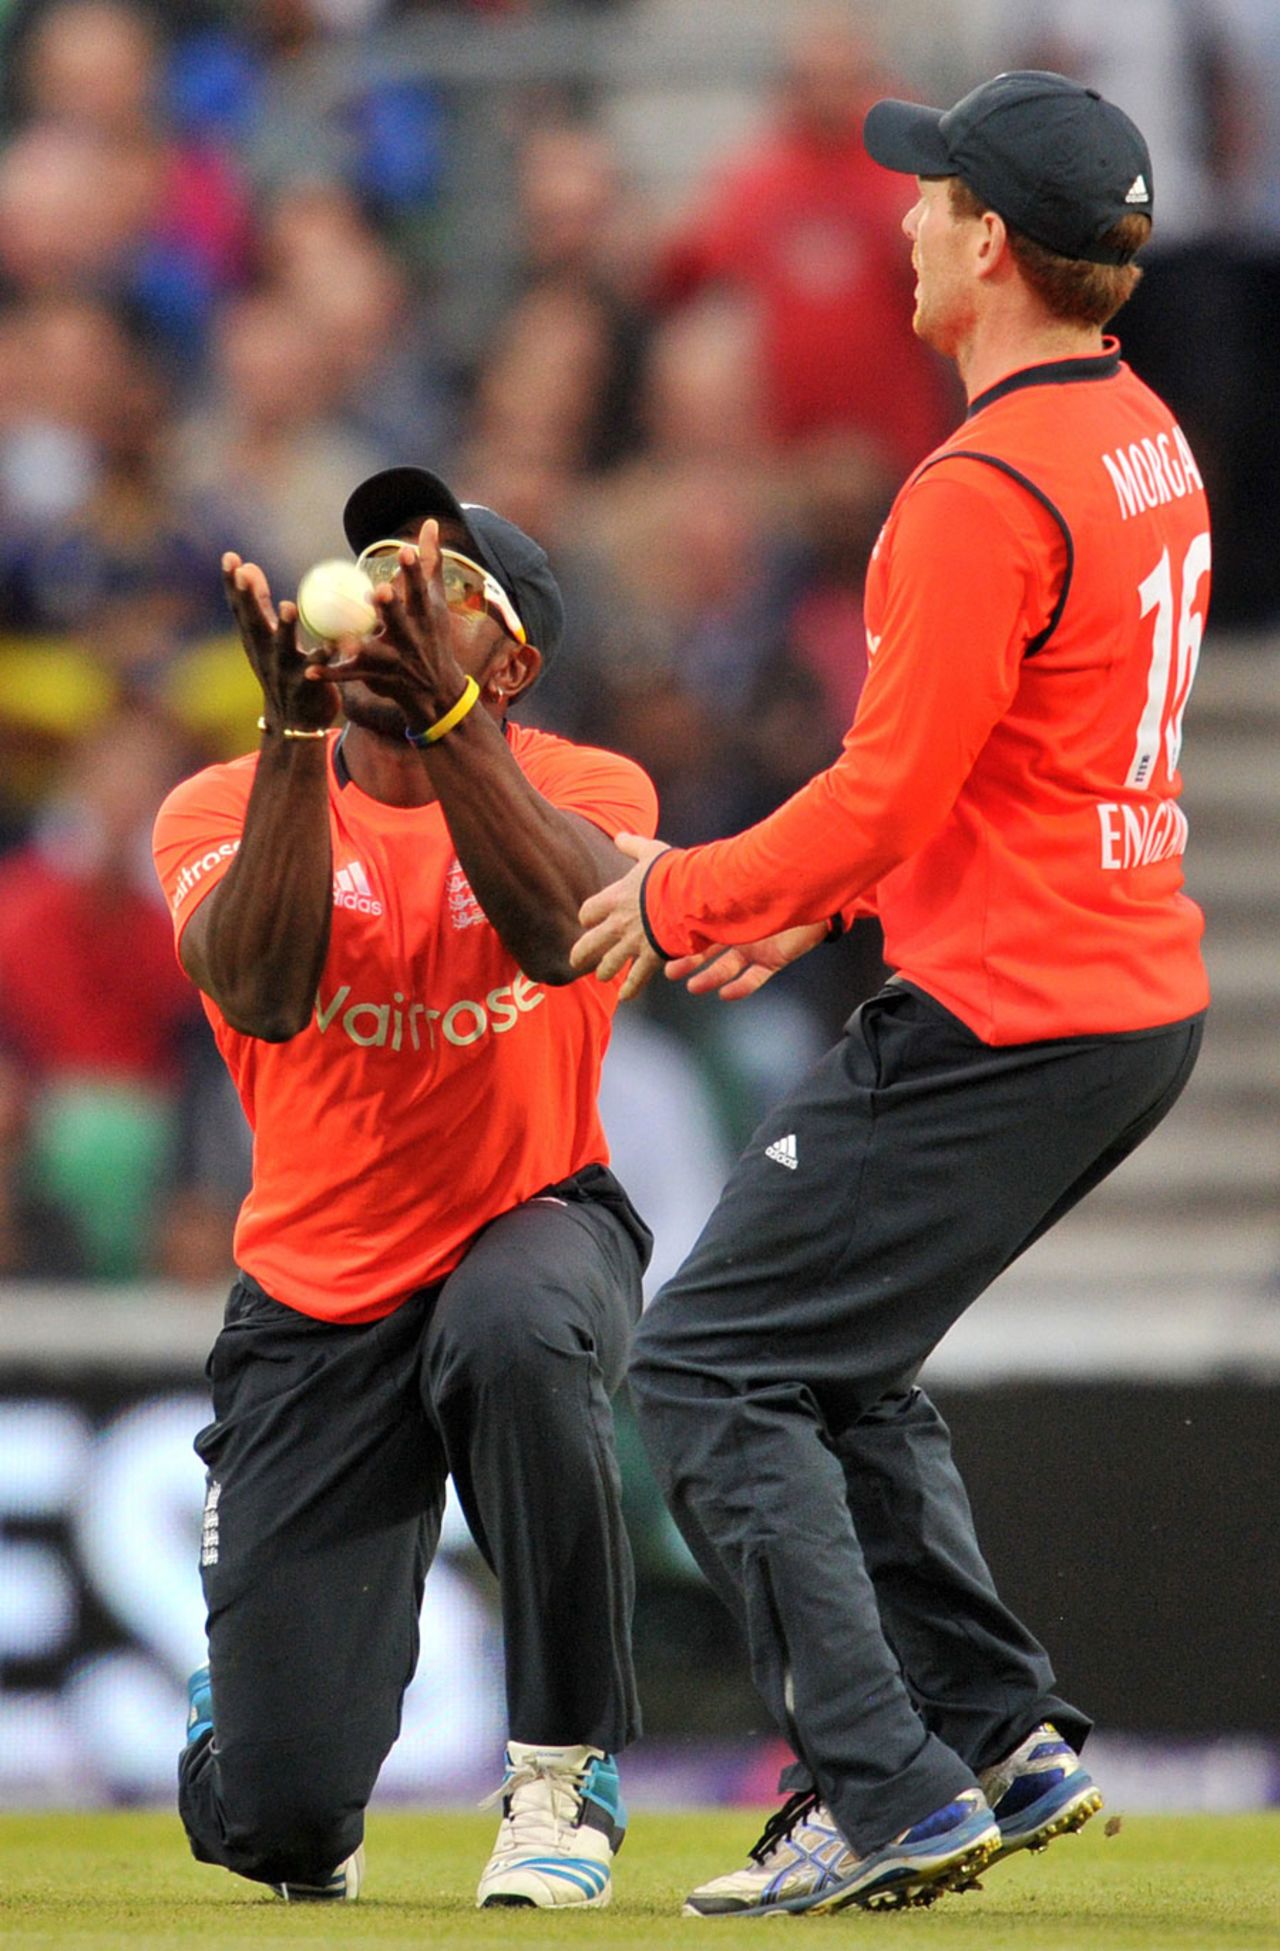 Michael Carberry drops Thisara Perera, England v Sri Lanka, T20, The Oval, May 20, 2014